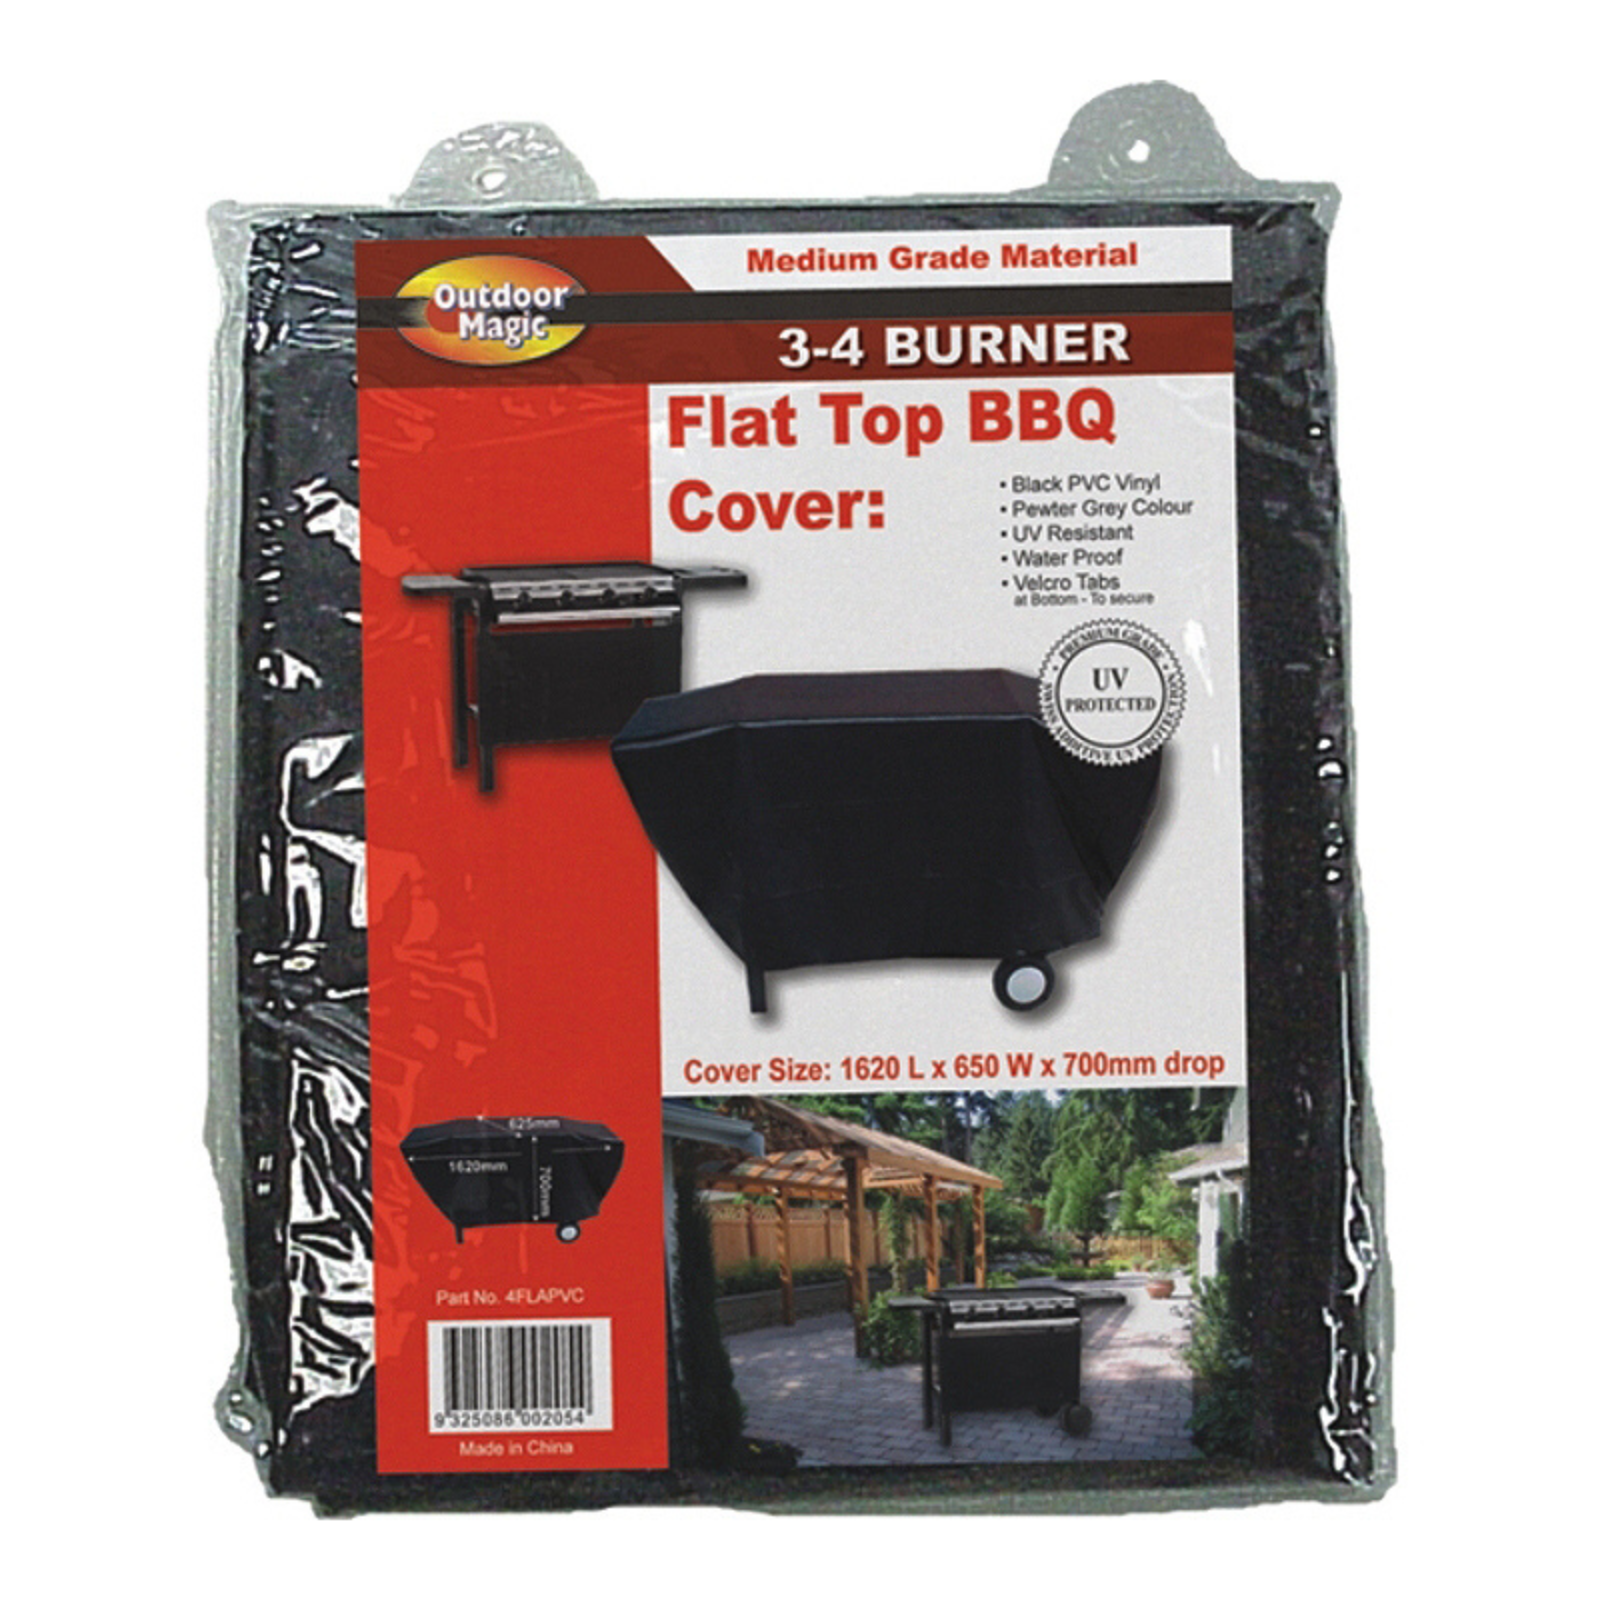 Outdoor Magic - Flat Top BBQ Cover 3-4 Burner - 4FLAPVC